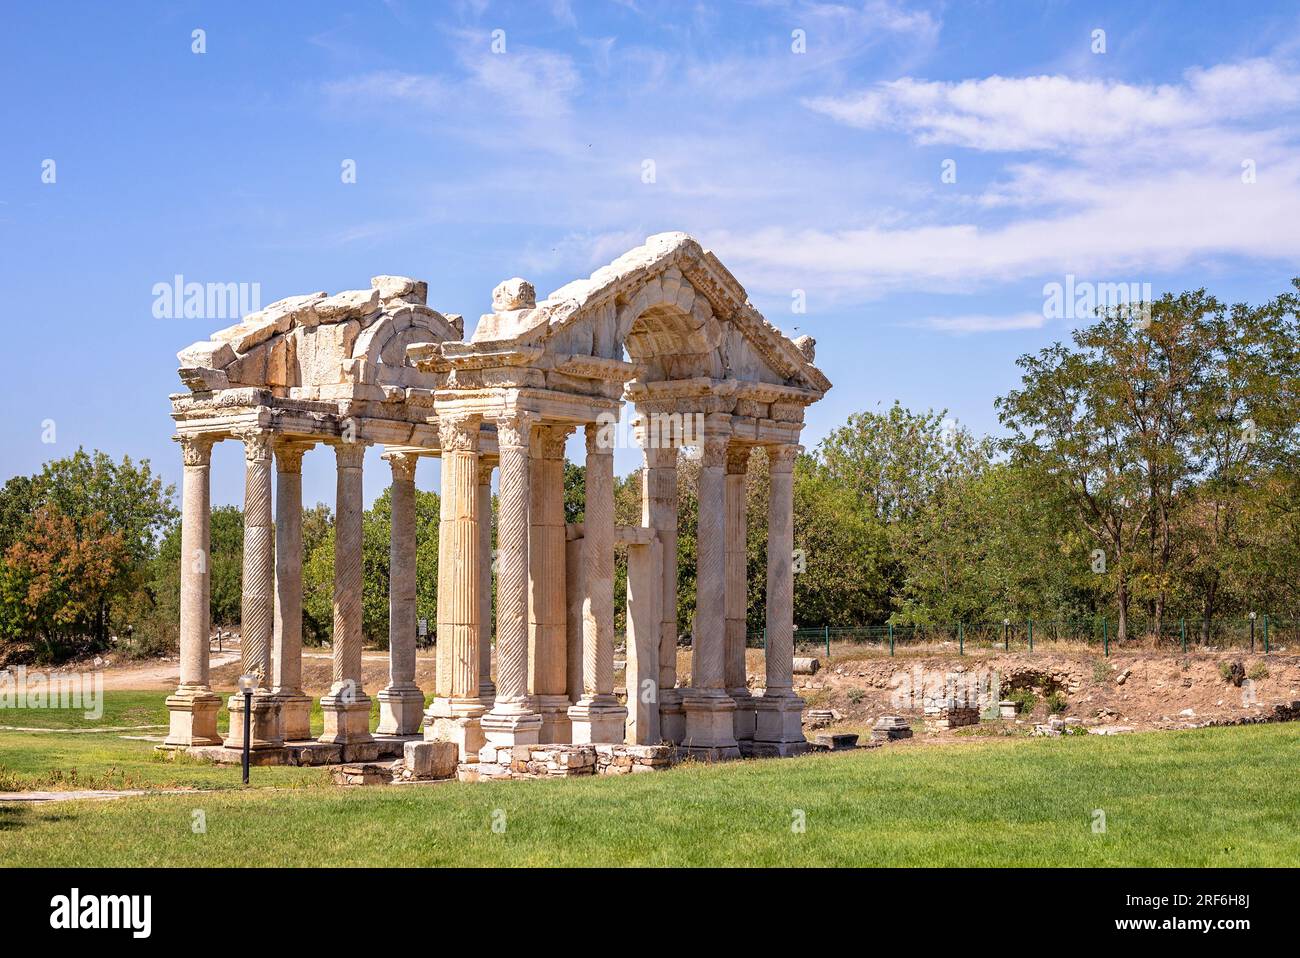 Ruinen des römischen Tempels Tetrapylon in Aphrodisias, eine bemerkenswert erhaltene römische Stadt in der antiken Caria, Türkei, UNESCO-Weltkulturerbe Stockfoto